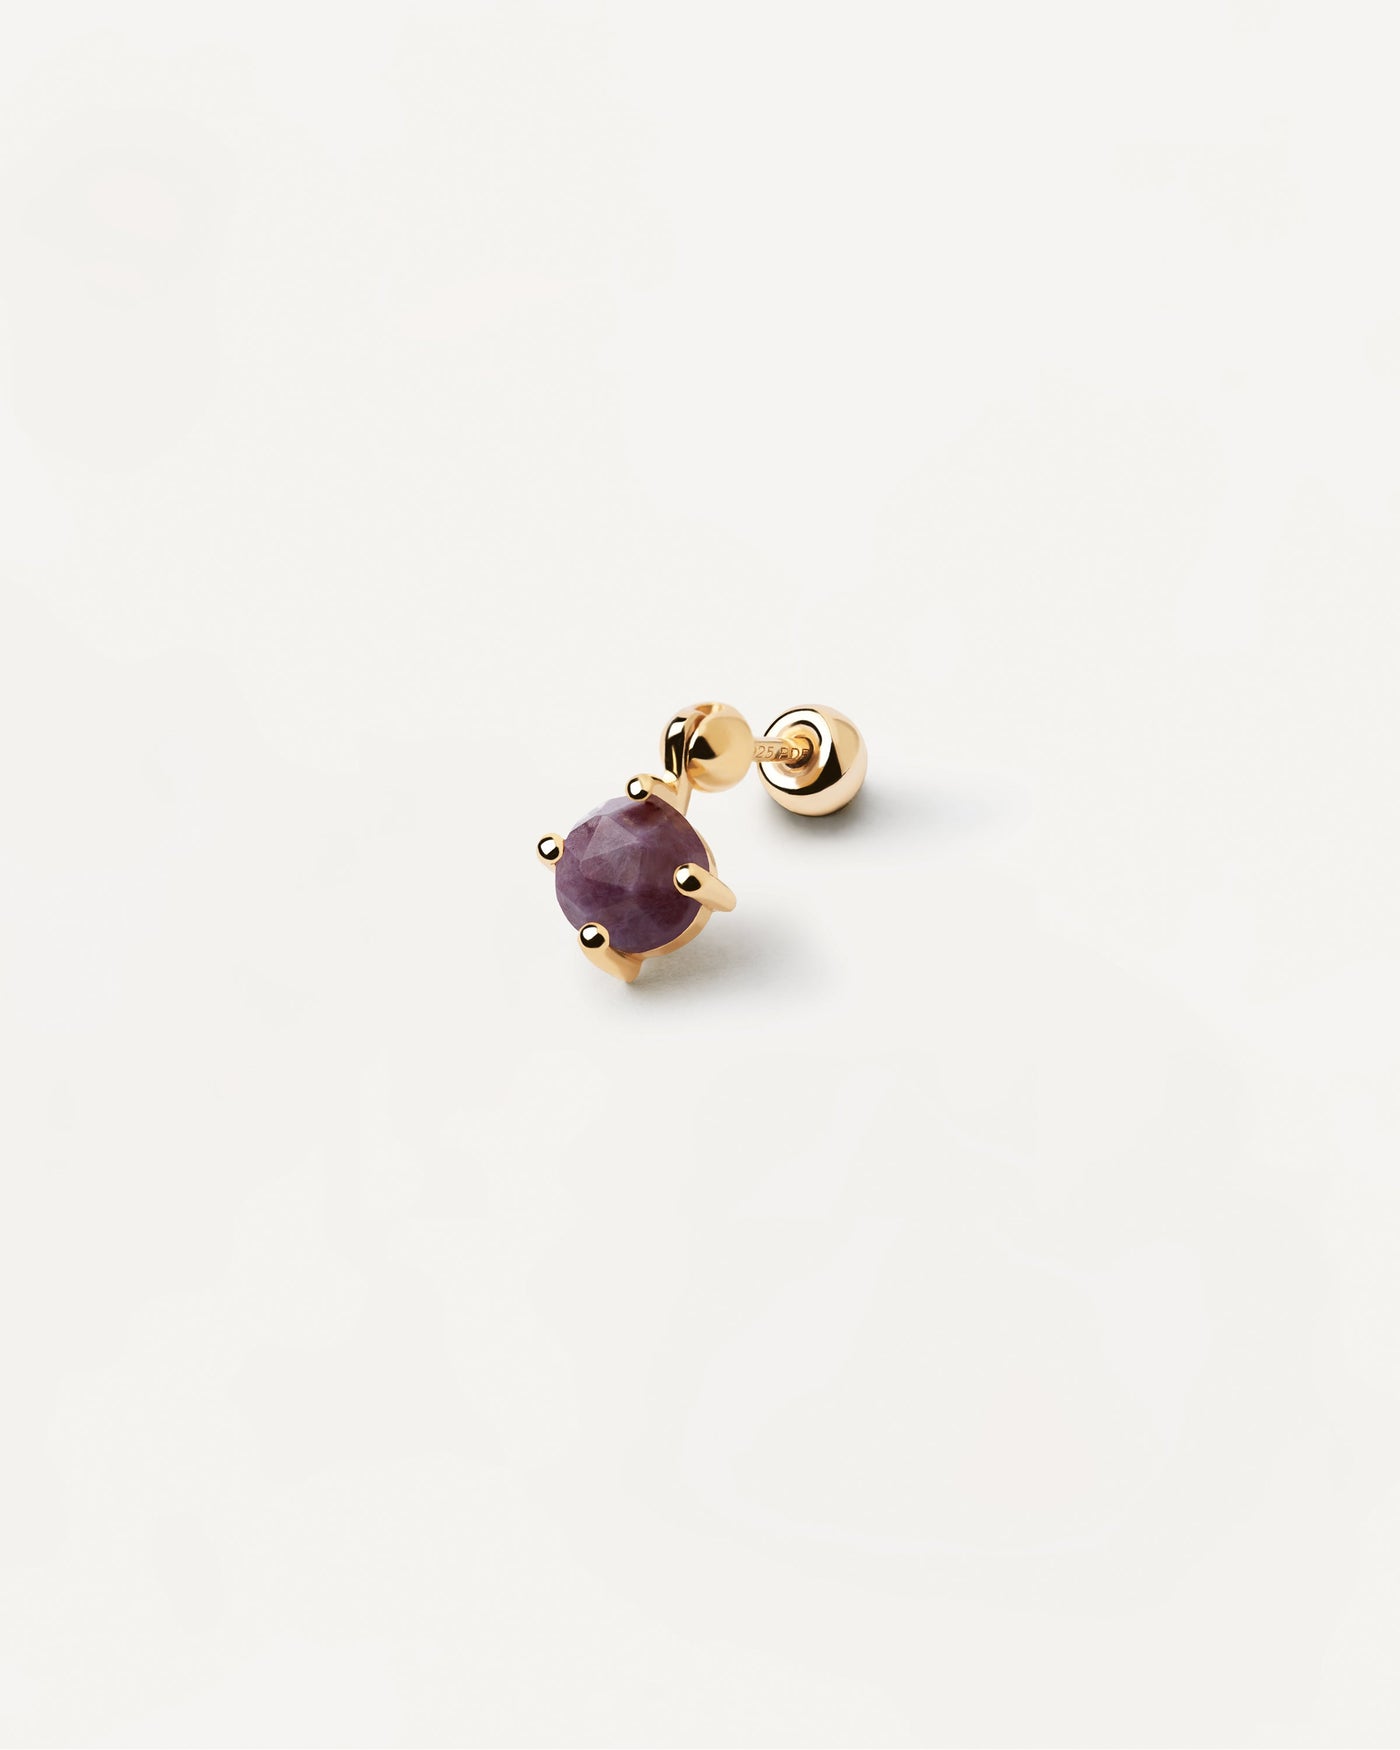 Kimi Charoit Einzelner Ohrring. Vergoldeter Piercing-Ohrring mit violettem Edelsteinanhänger im Rundschliff. Erhalten Sie die neuesten Produkte von PDPAOLA. Geben Sie Ihre Bestellung sicher auf und erhalten Sie diesen Bestseller.